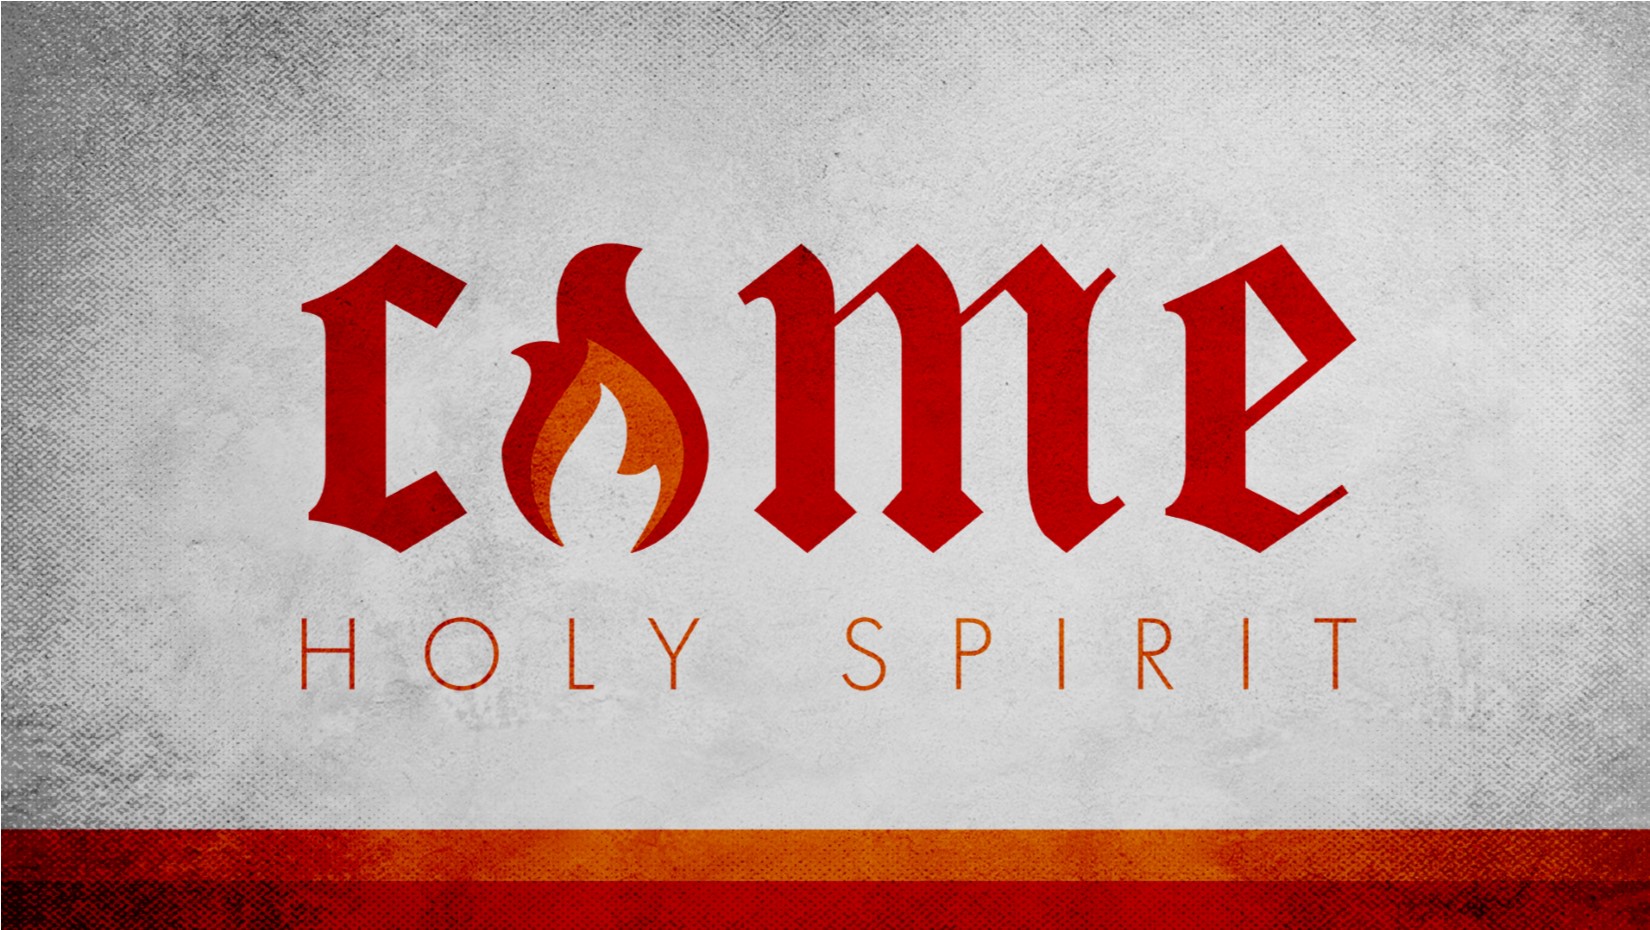 05.31.2020 Come Holy Spirit